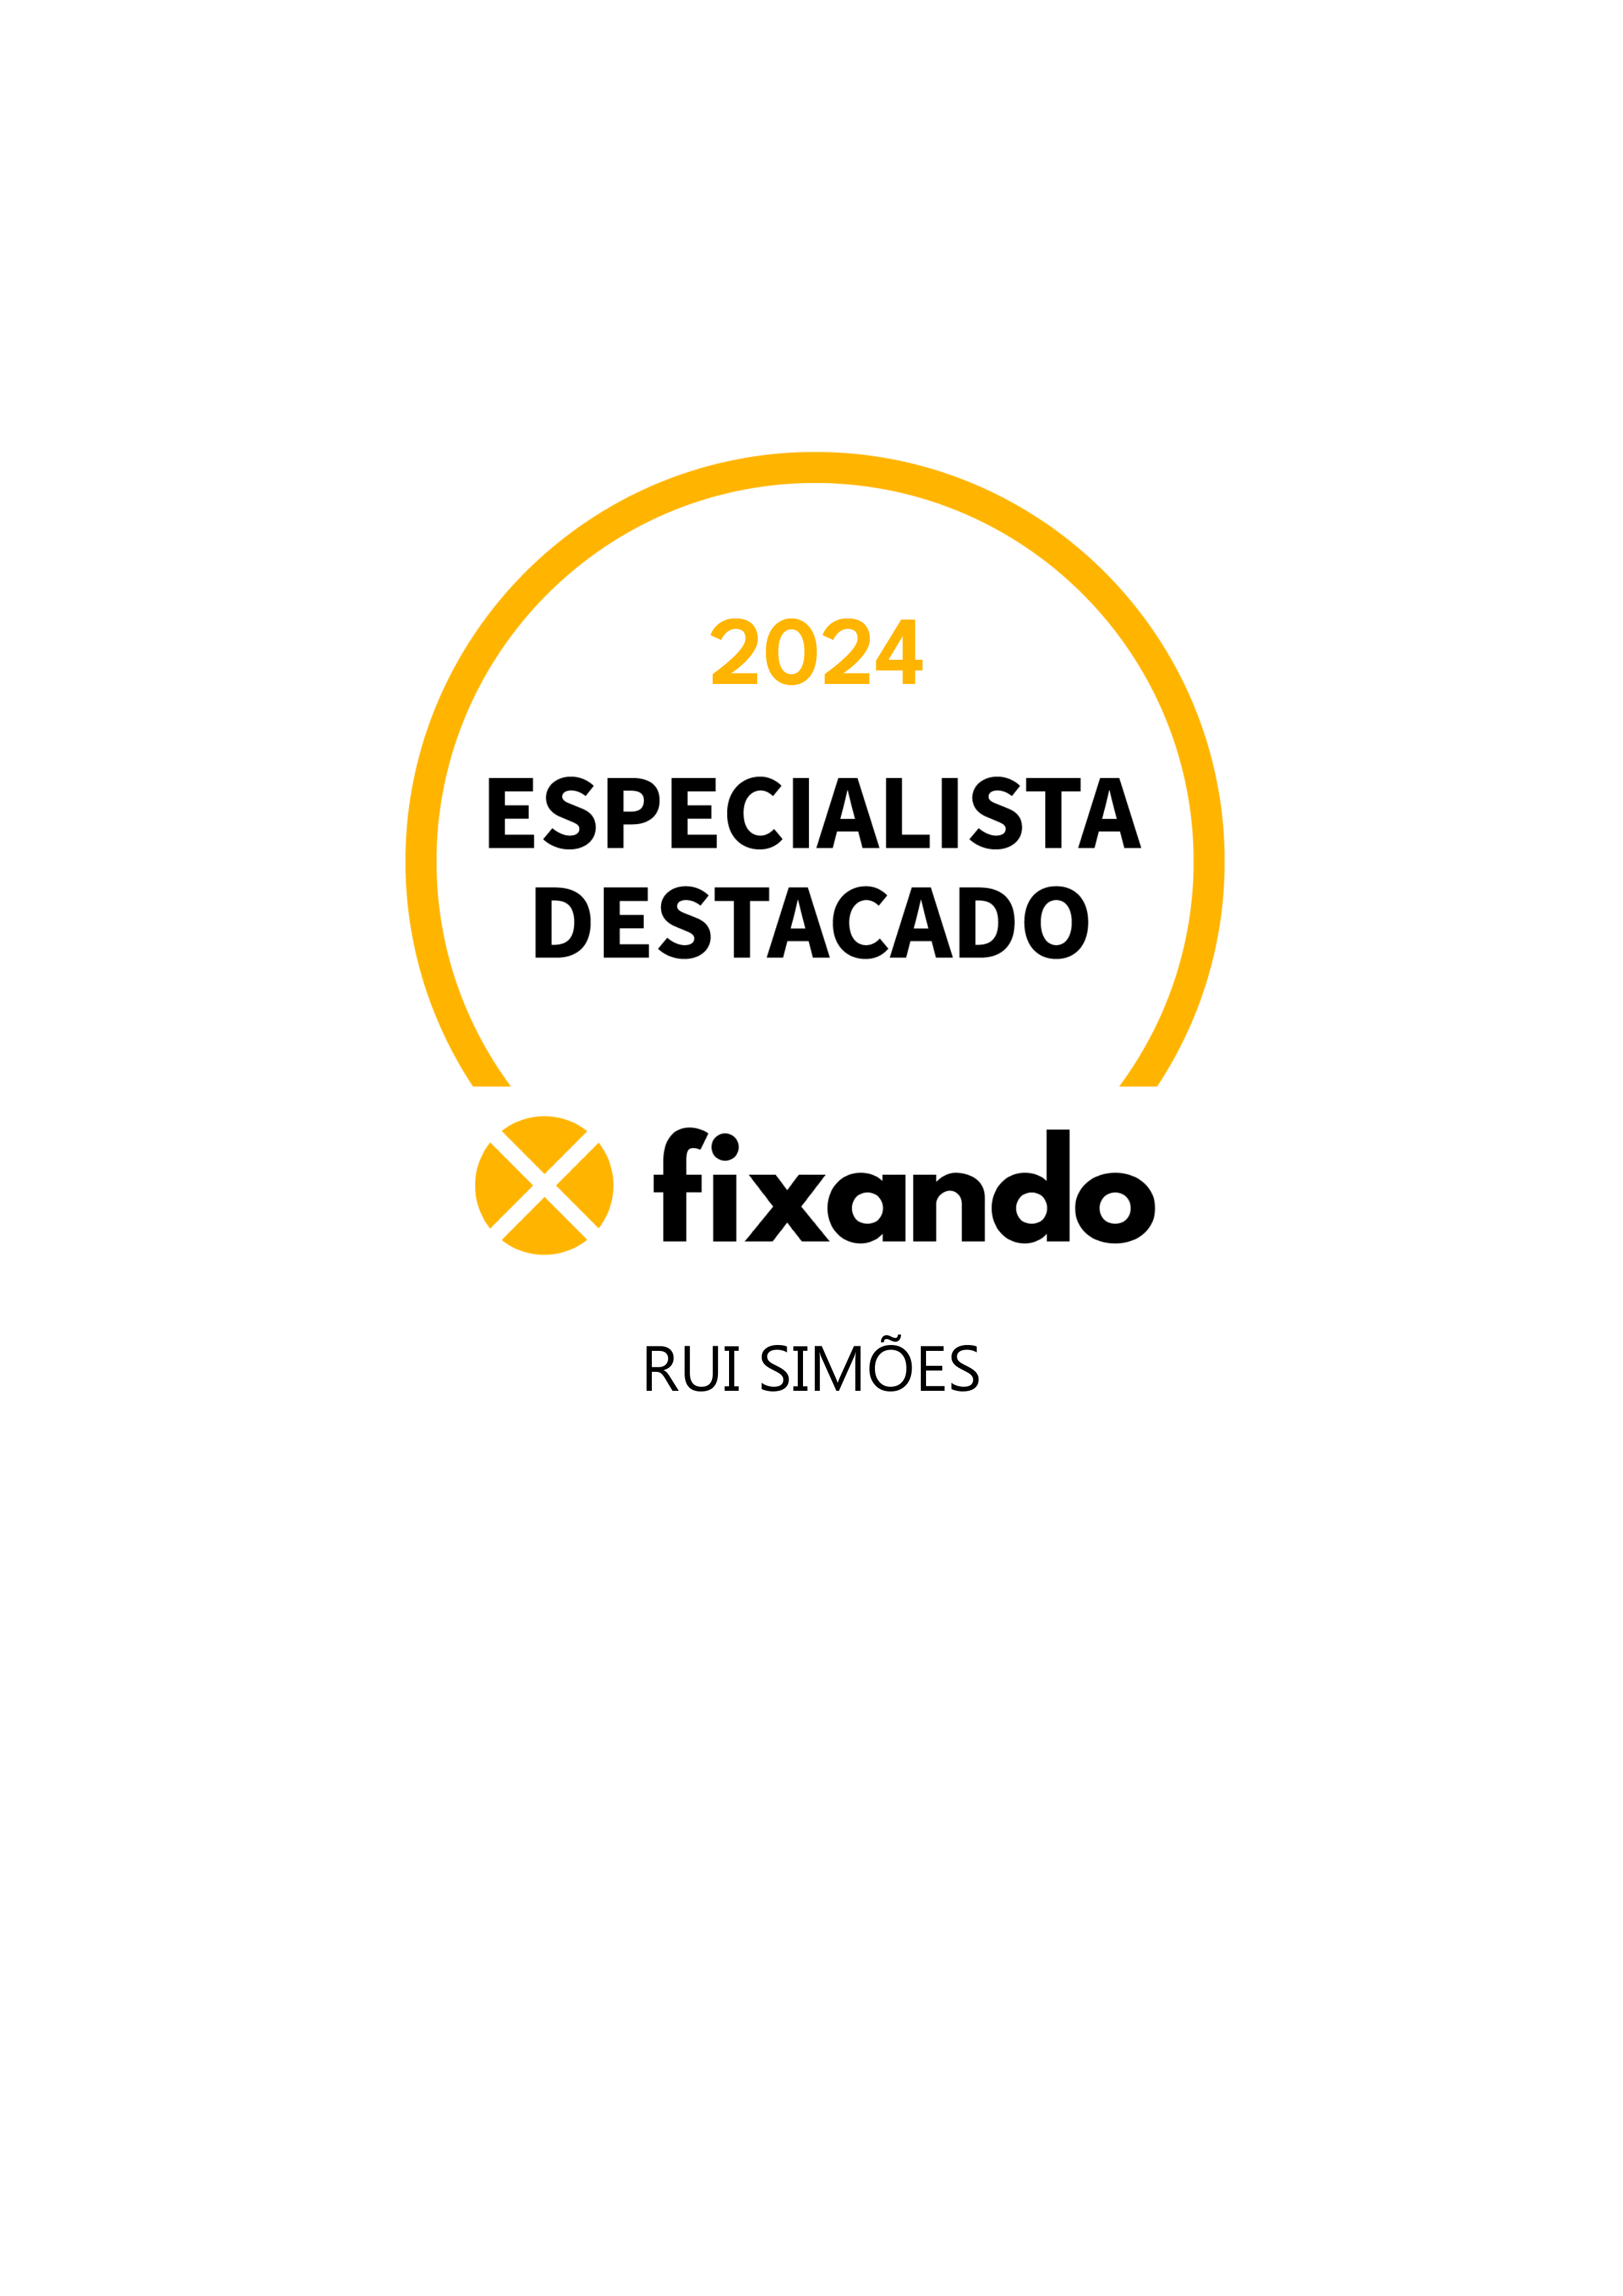 Rui Simões - Lisboa - Transmissão de Vídeo e Serviços de Webcasting